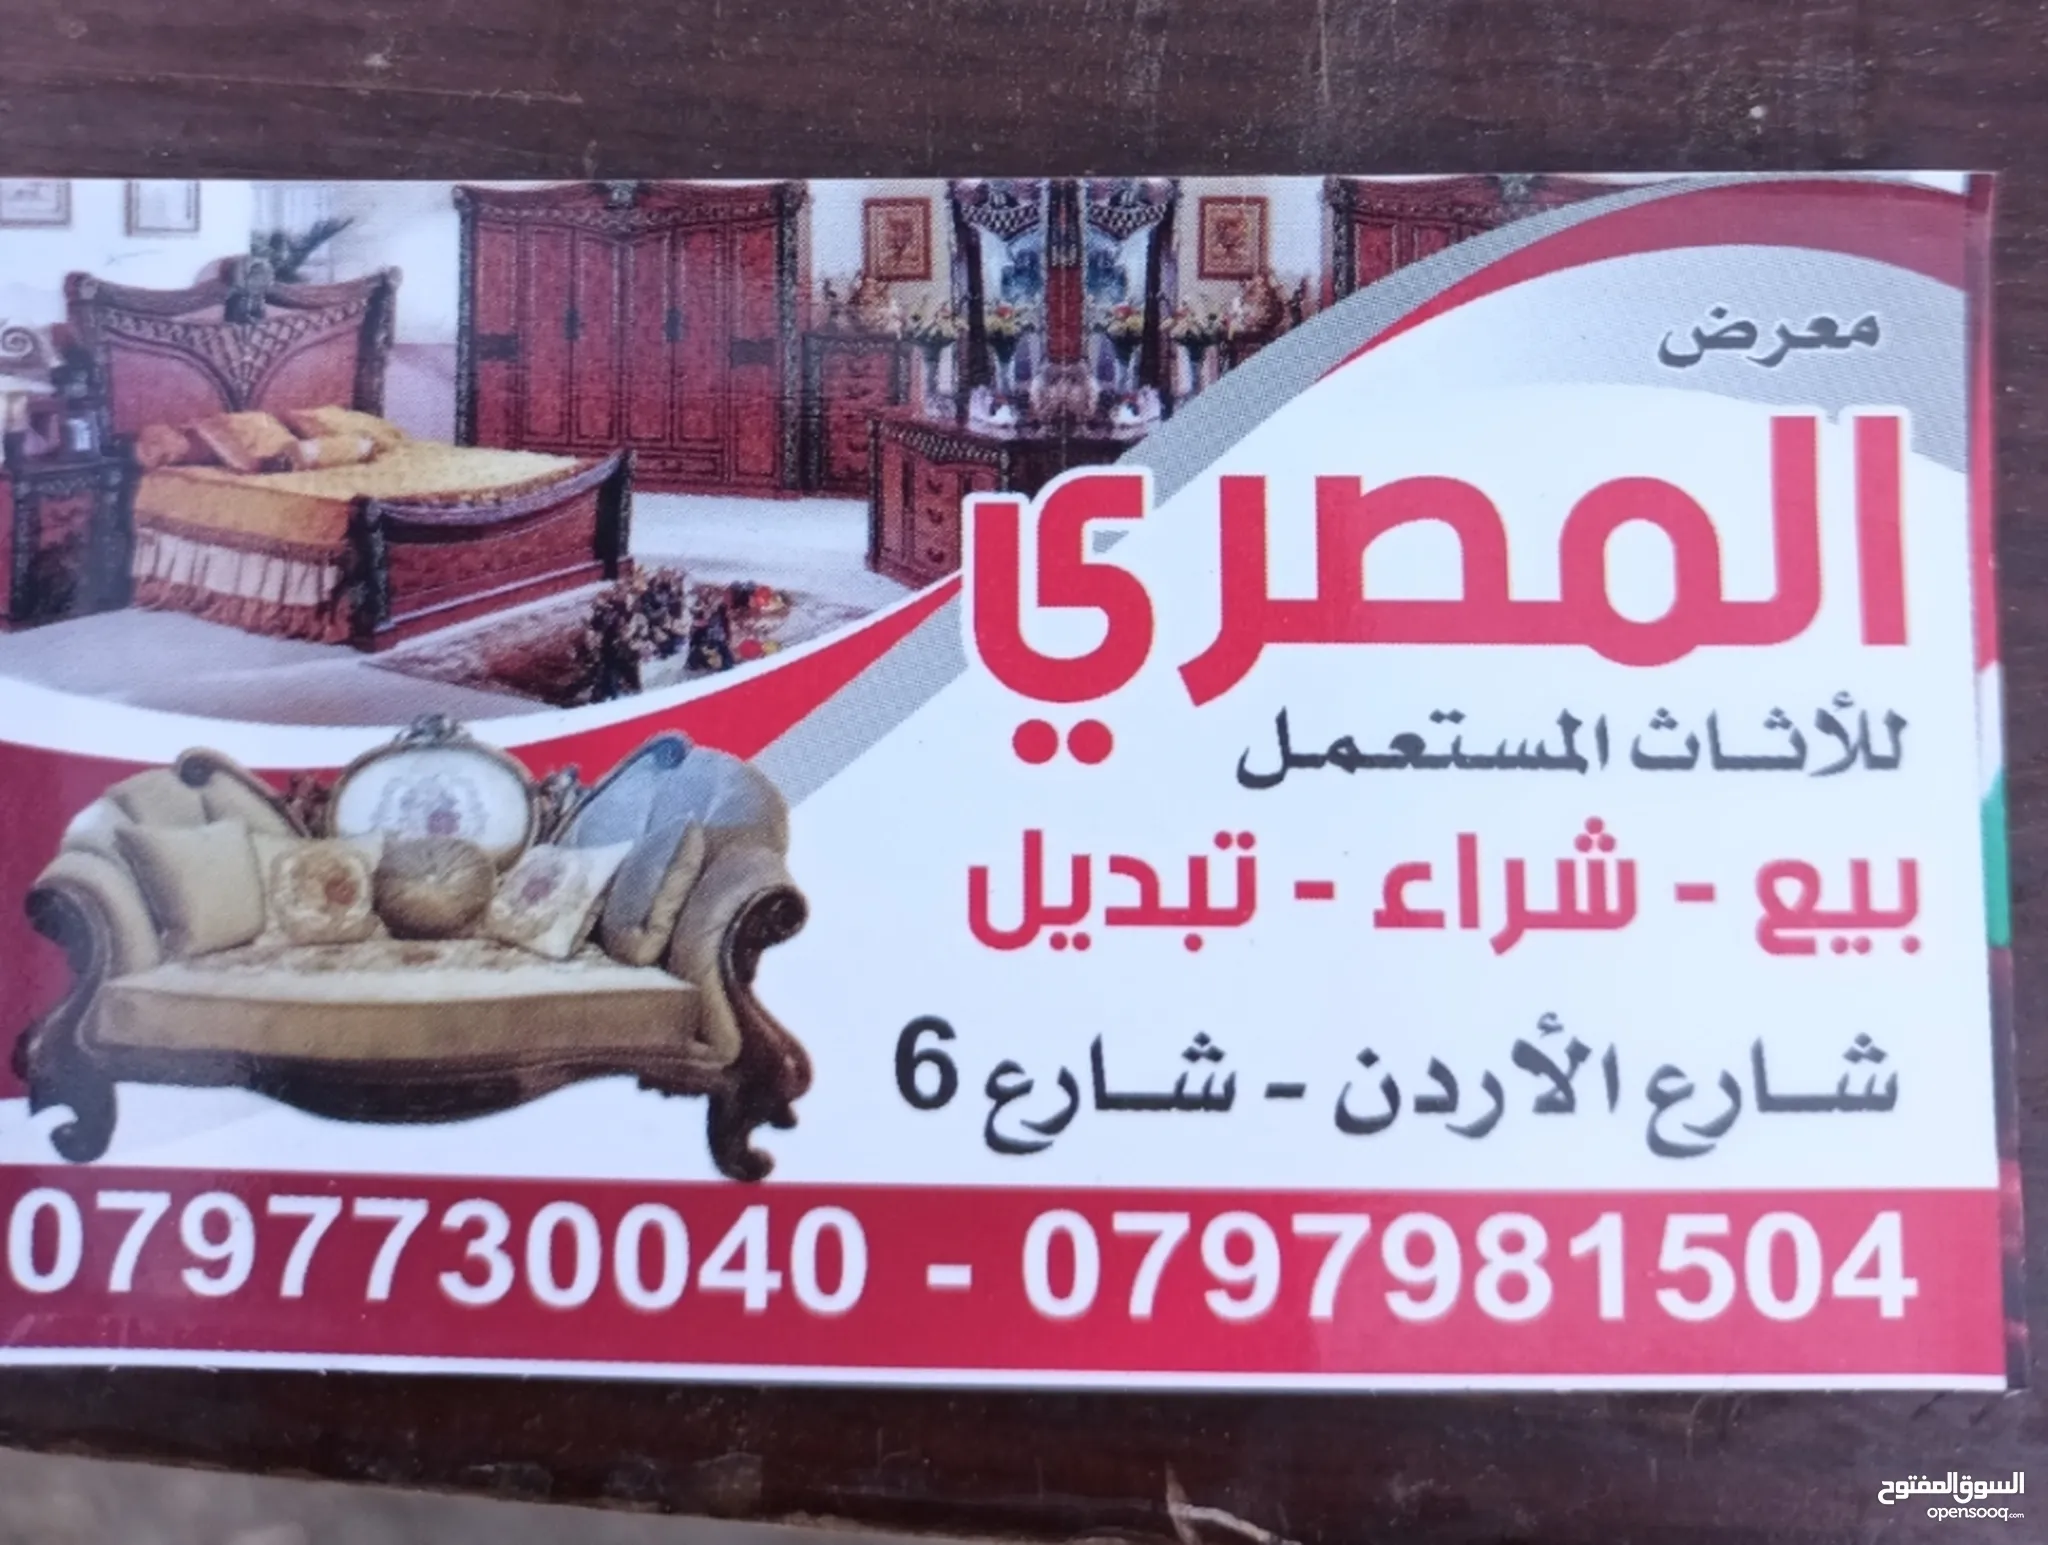 نشتري اثاث مستعمل : اثاث مستعمل : افضل الاسعار في عمان | السوق المفتوح